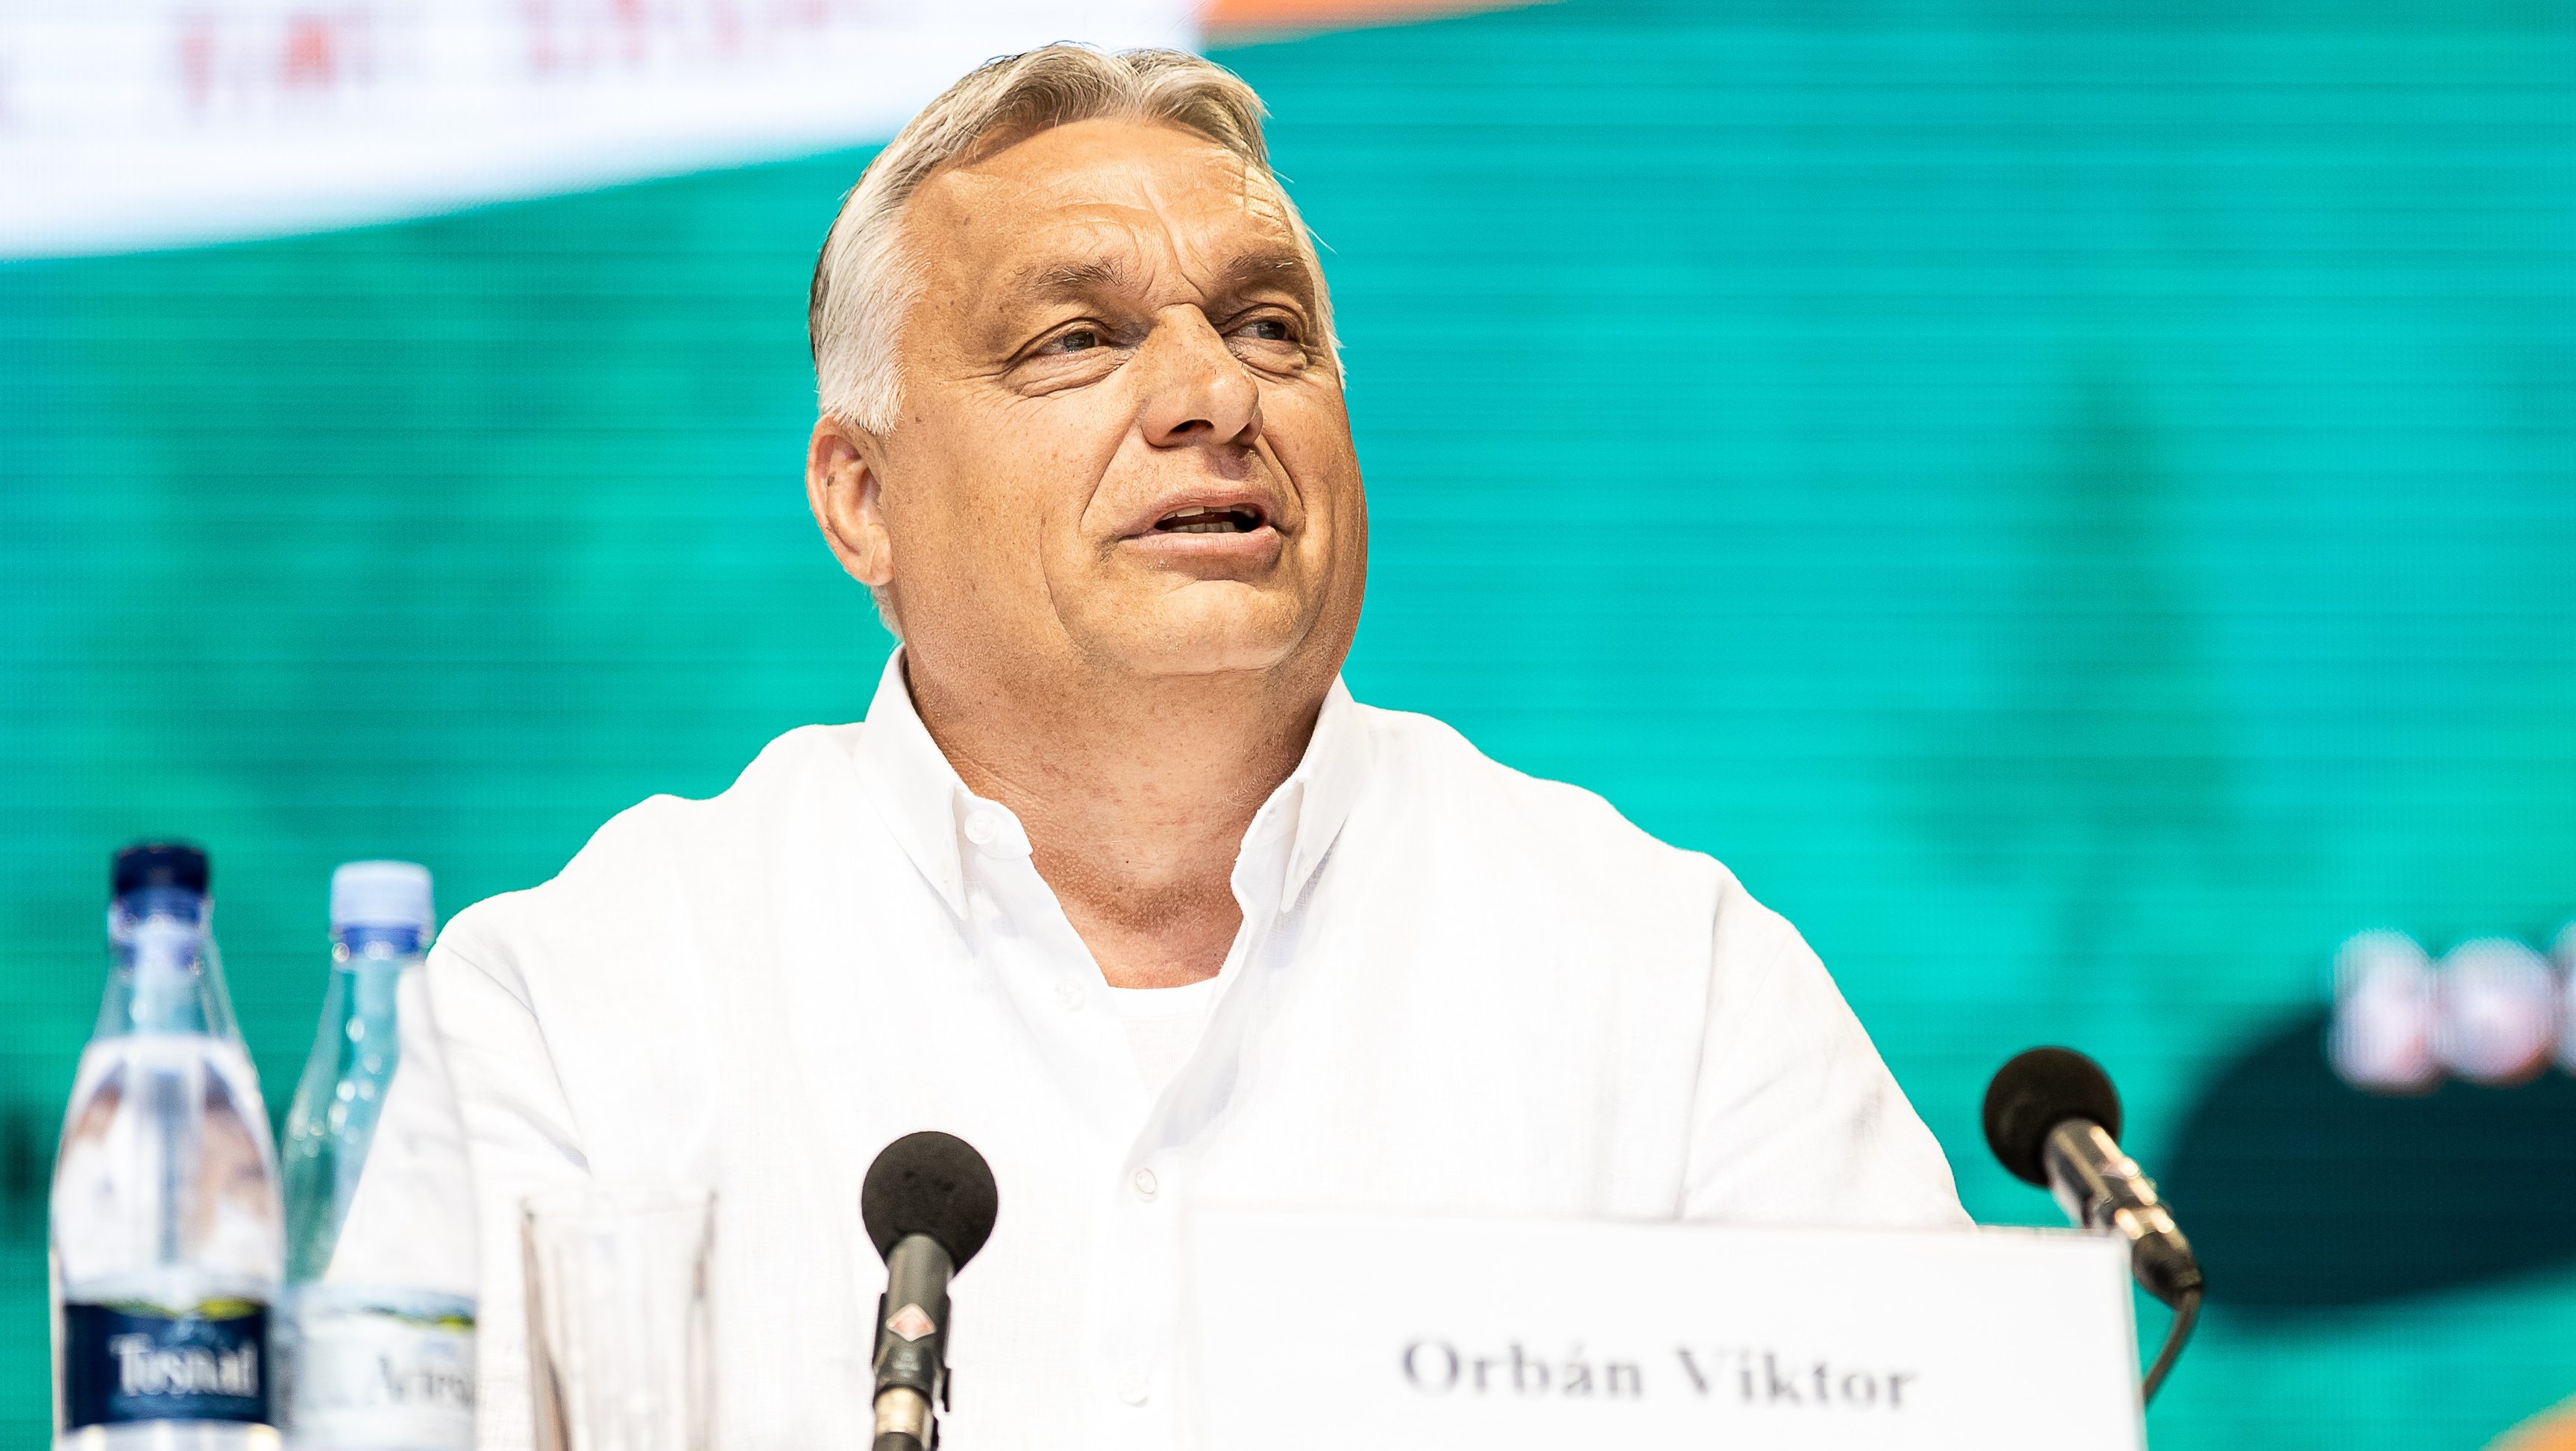 Orbán tusványosi beszédének fajelméleti részeiről a nagy magyar keresztény egyházaknak nincs véleménye